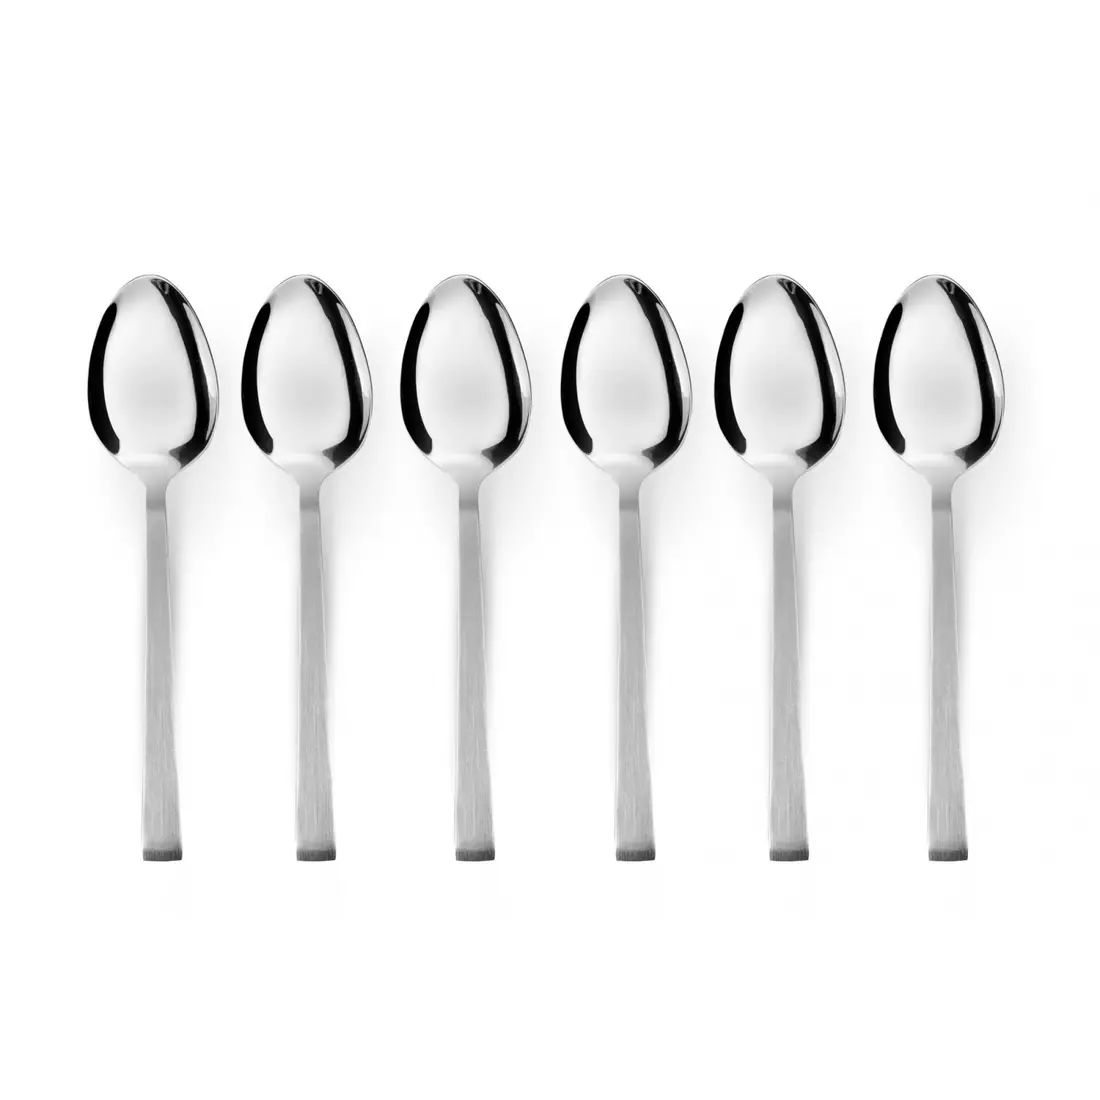 KULIG KRETA set of 6 coffee spoons, silver